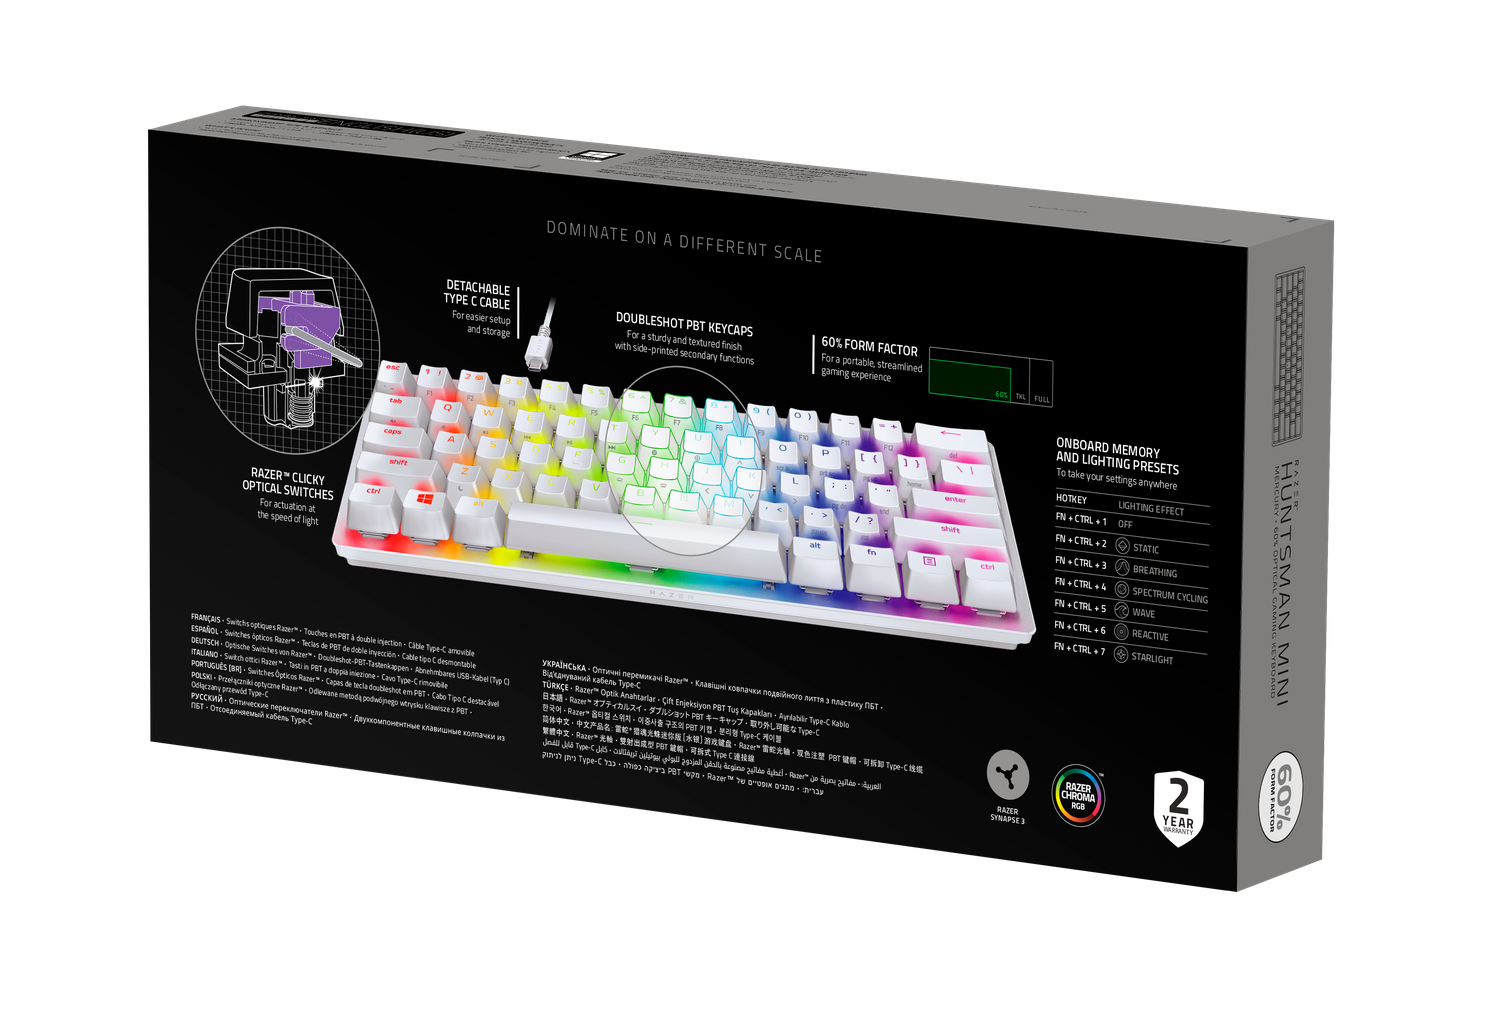 Razer Huntsman Mini Mercury – Análisis del teclado más pequeño